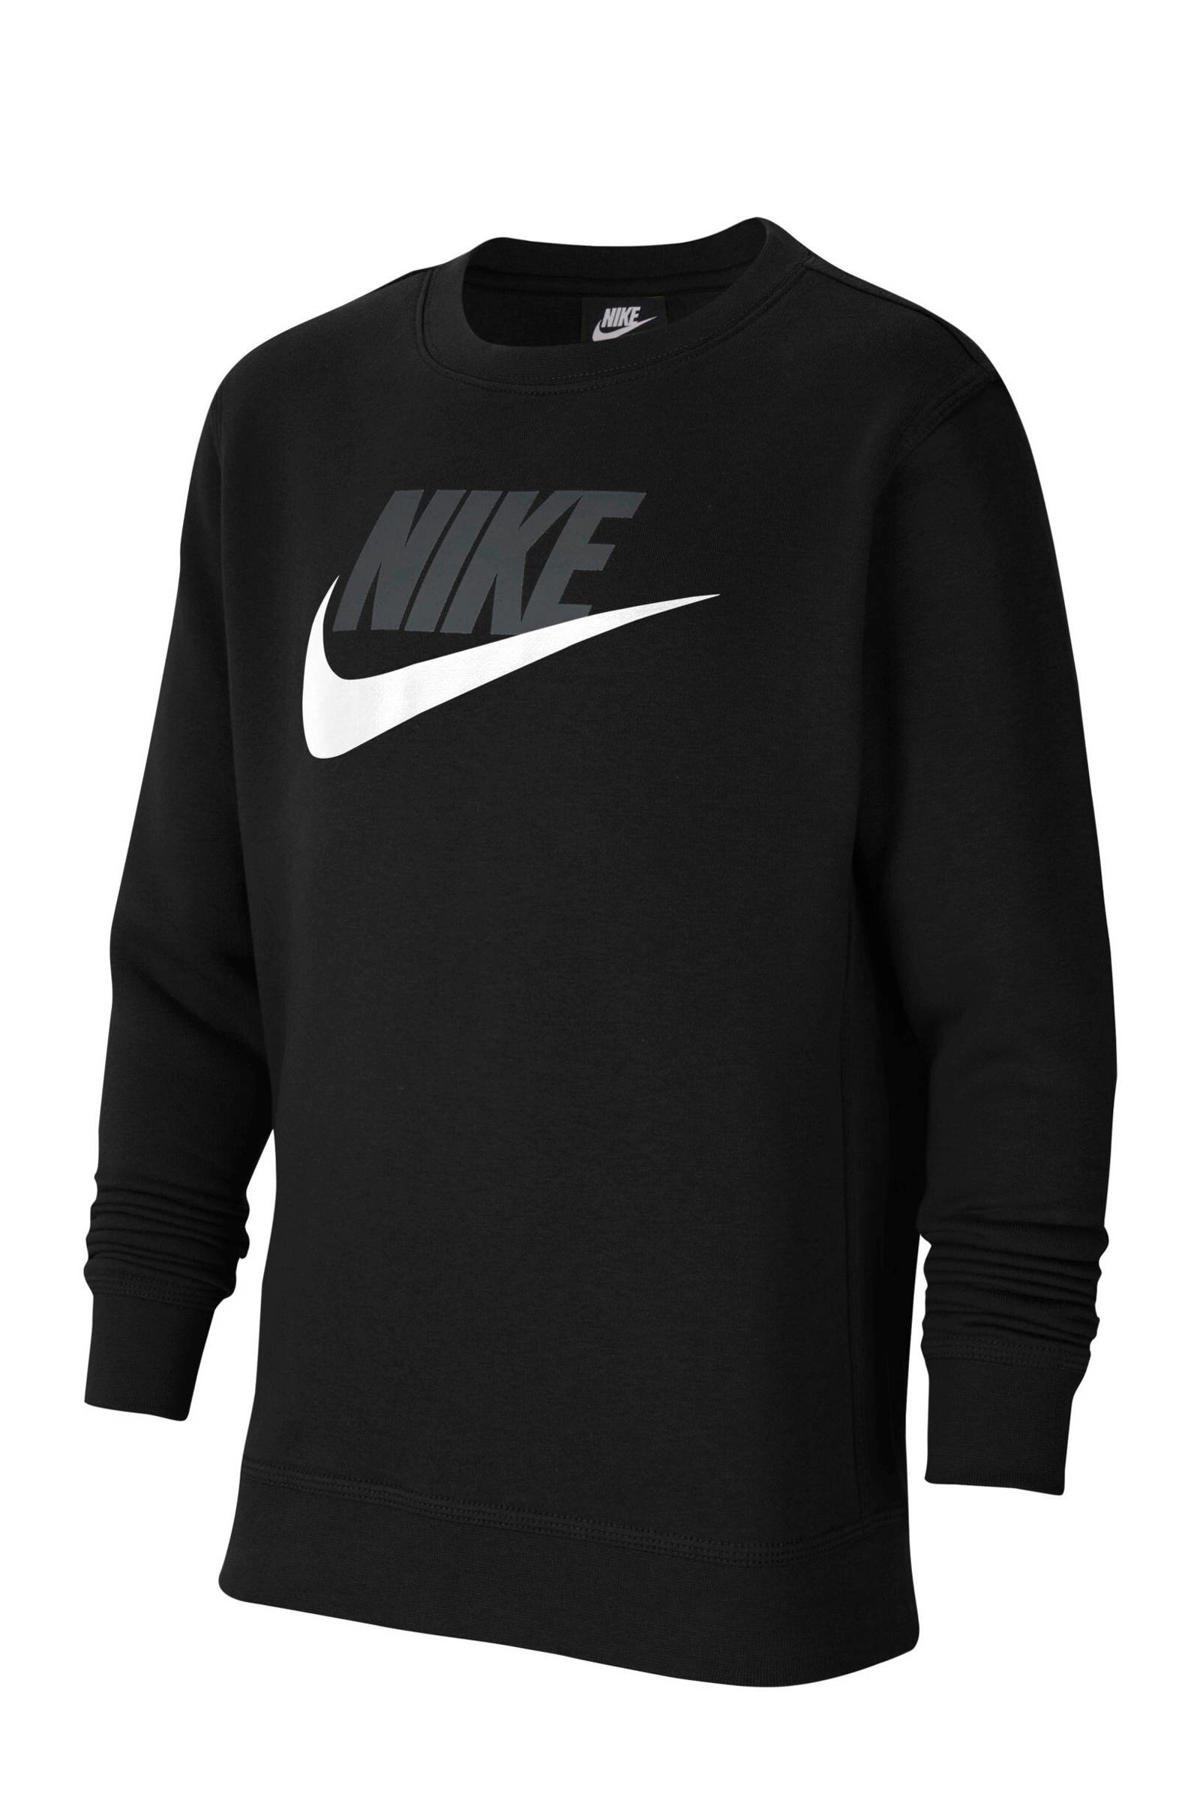 hardop Centrum Trek Nike sweater zwart | wehkamp